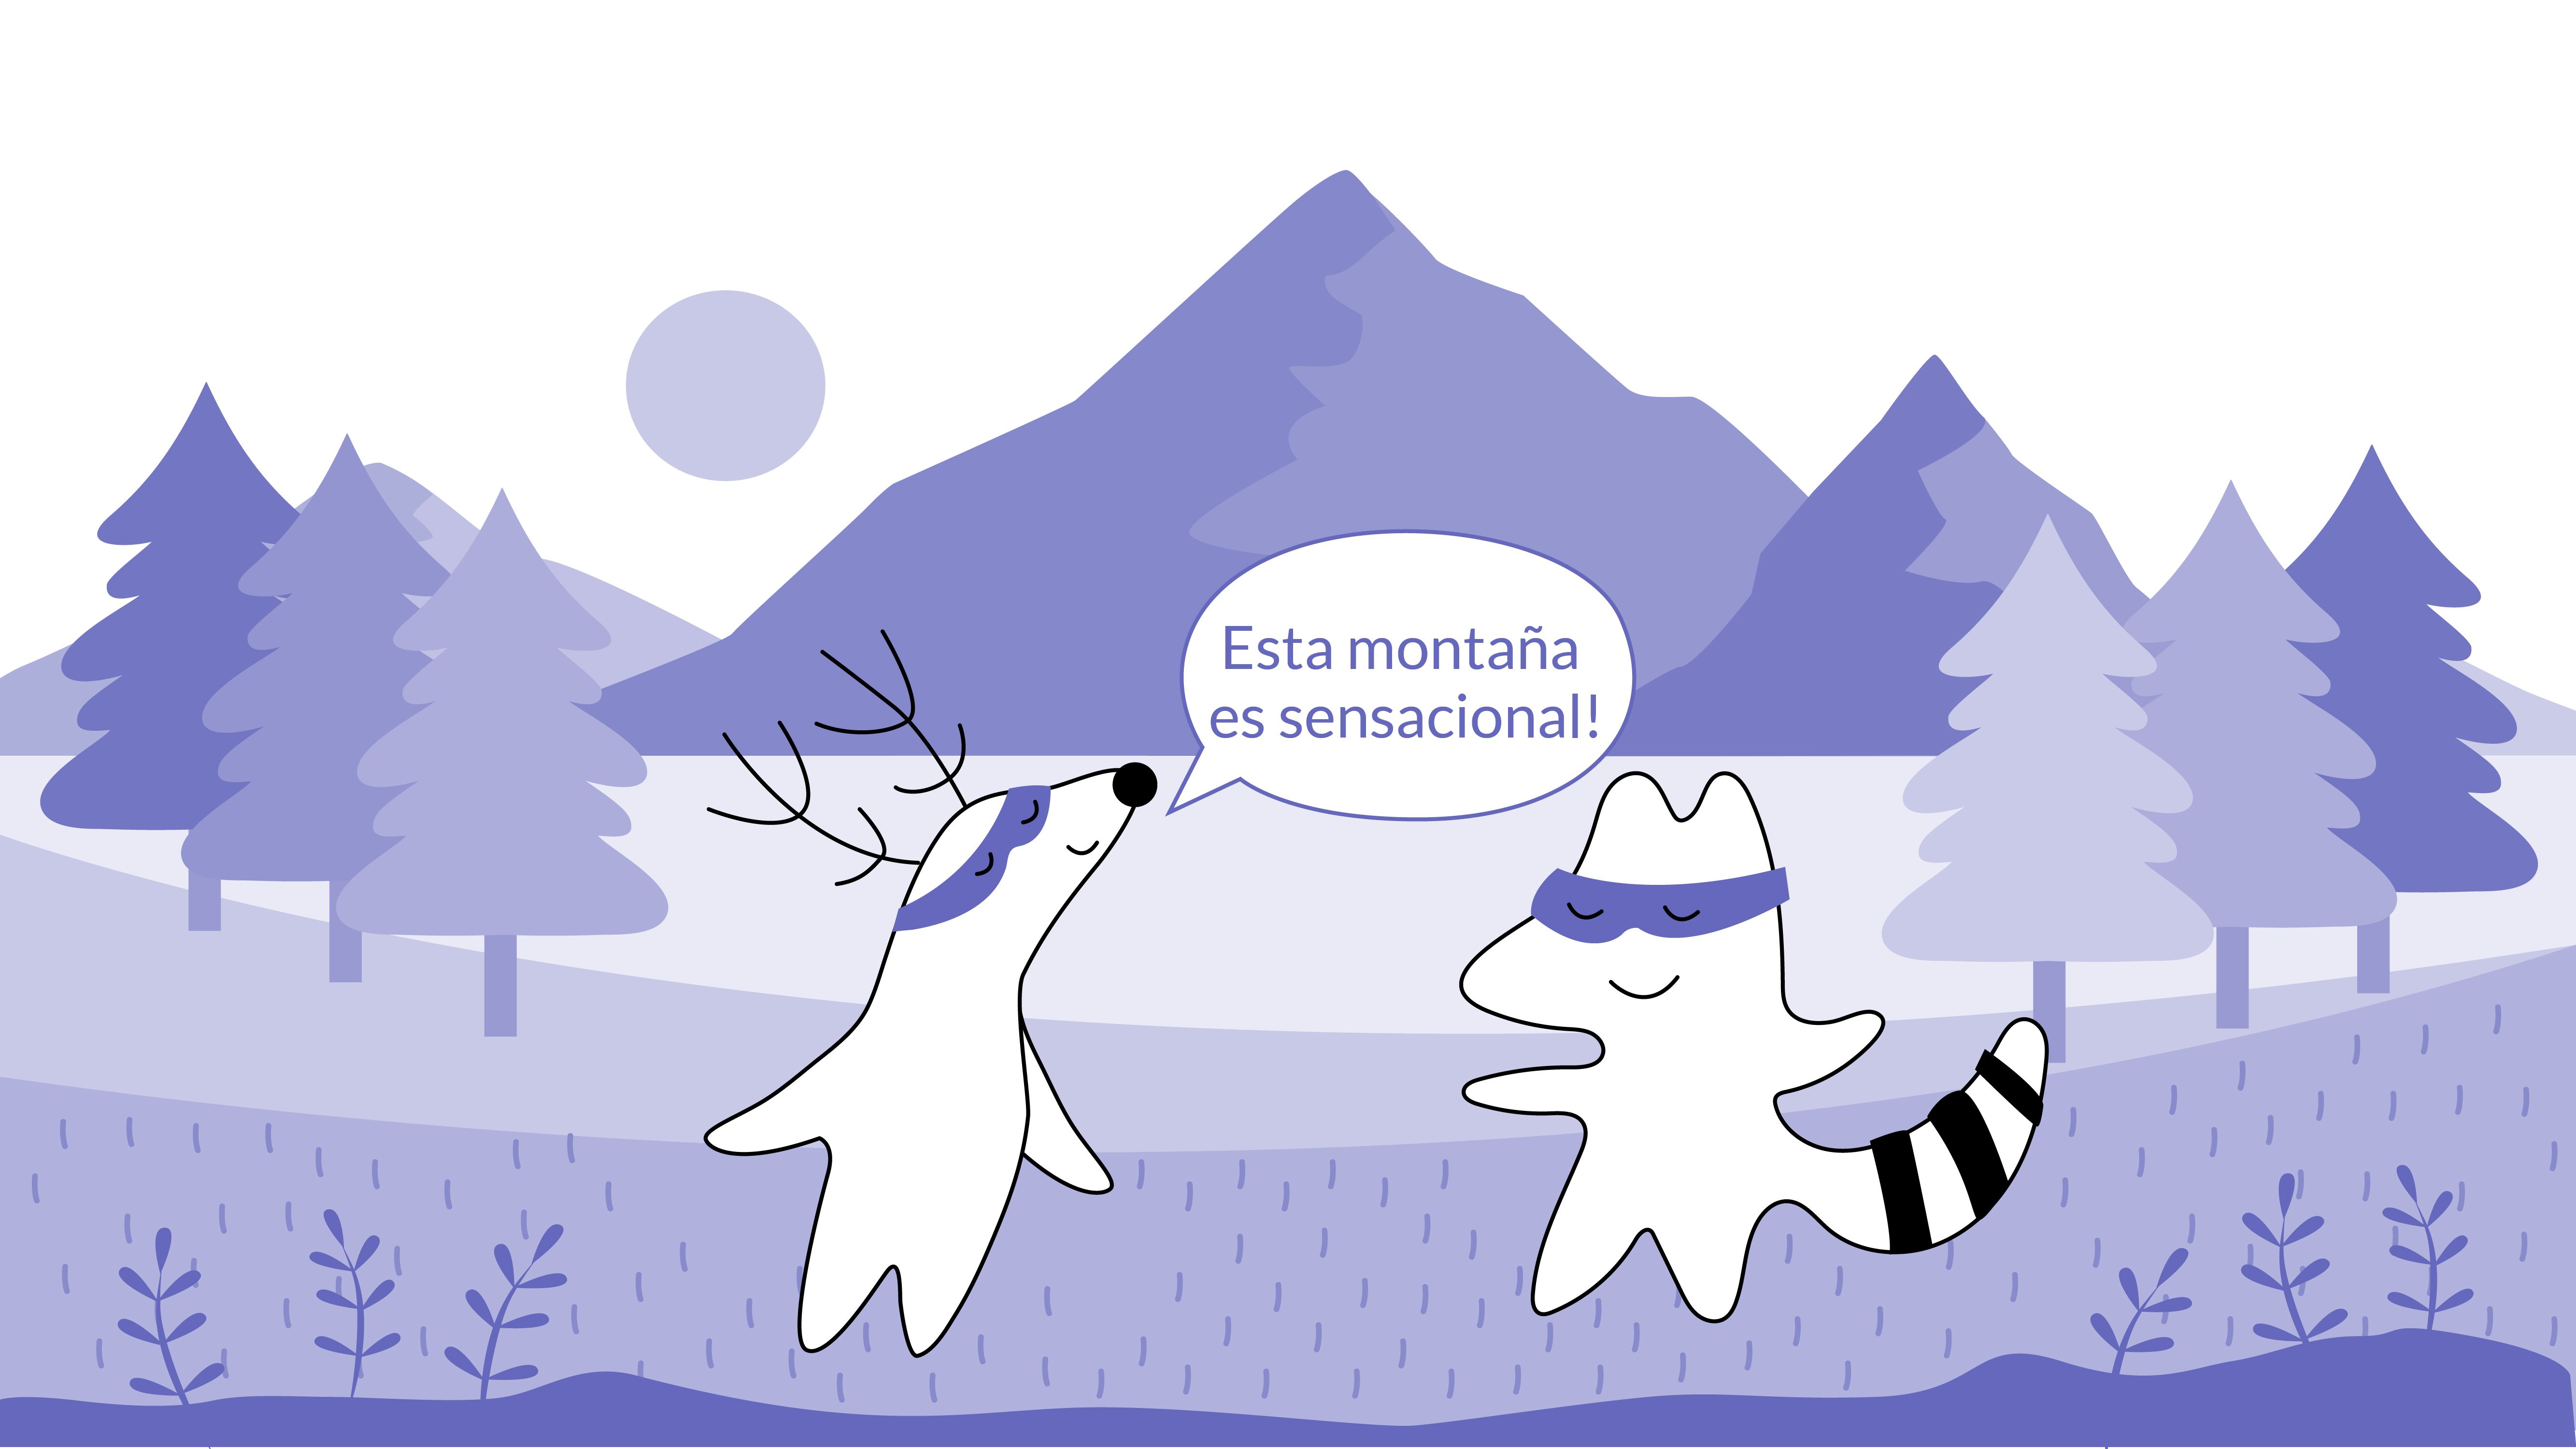 Soren and Iggy are standing in front of a mountain, Soren says “Esta montaña es sensacional.”